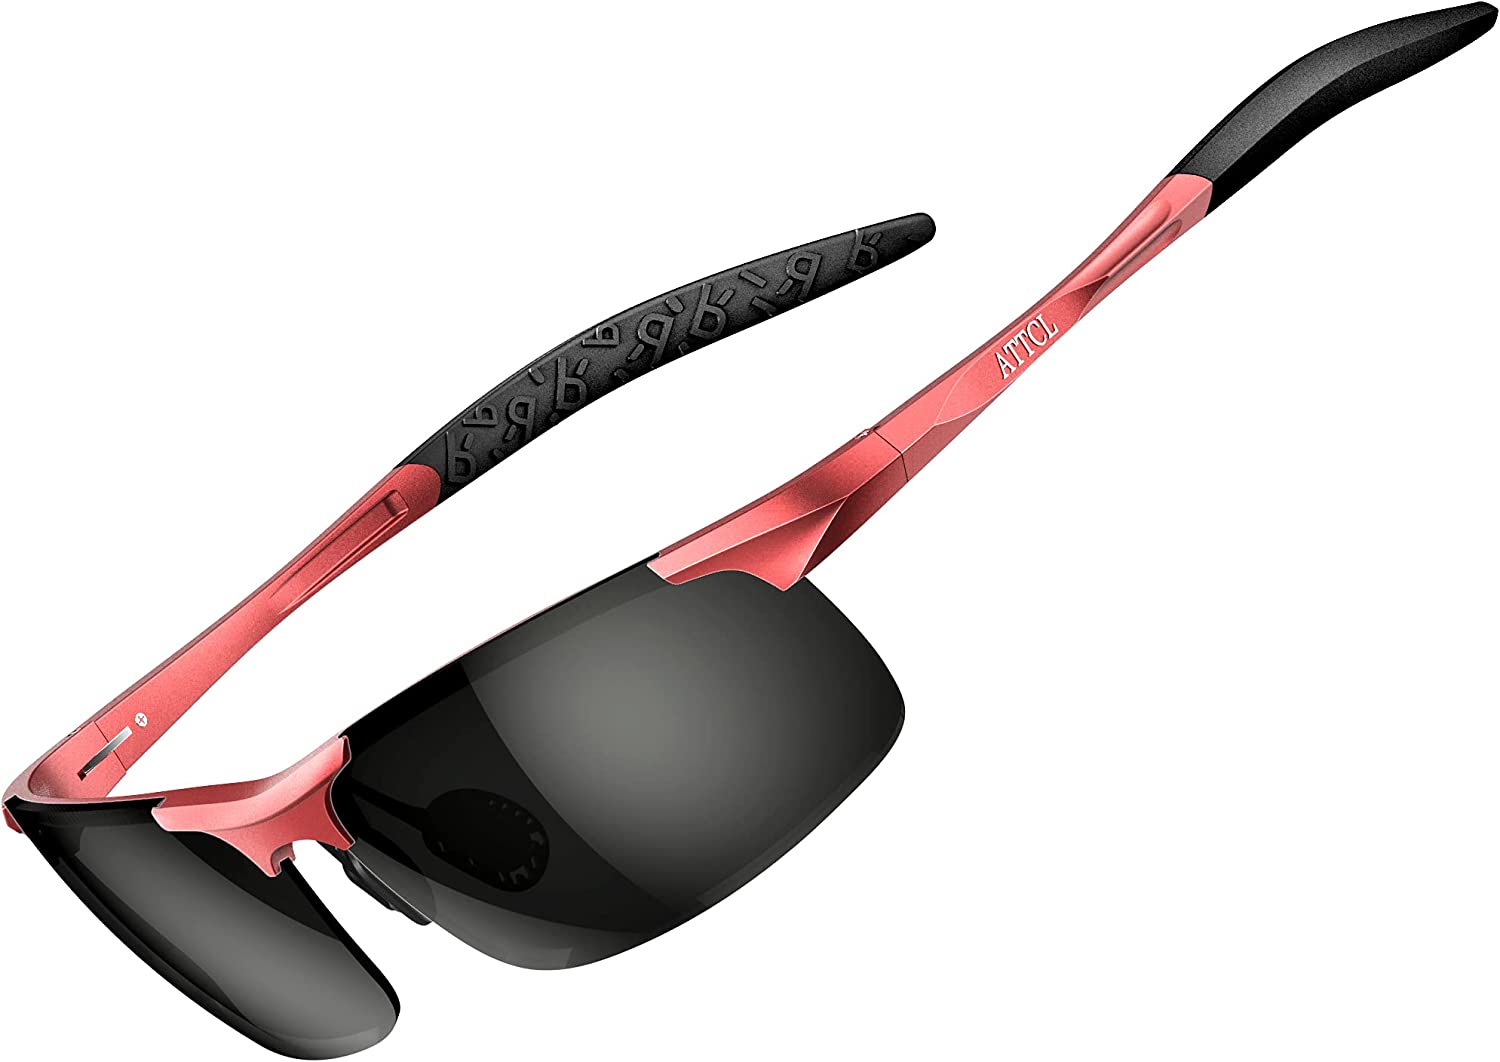 ATTCL Men's Fashion Driving Polarized Sunglasses for Men - Al-Mg